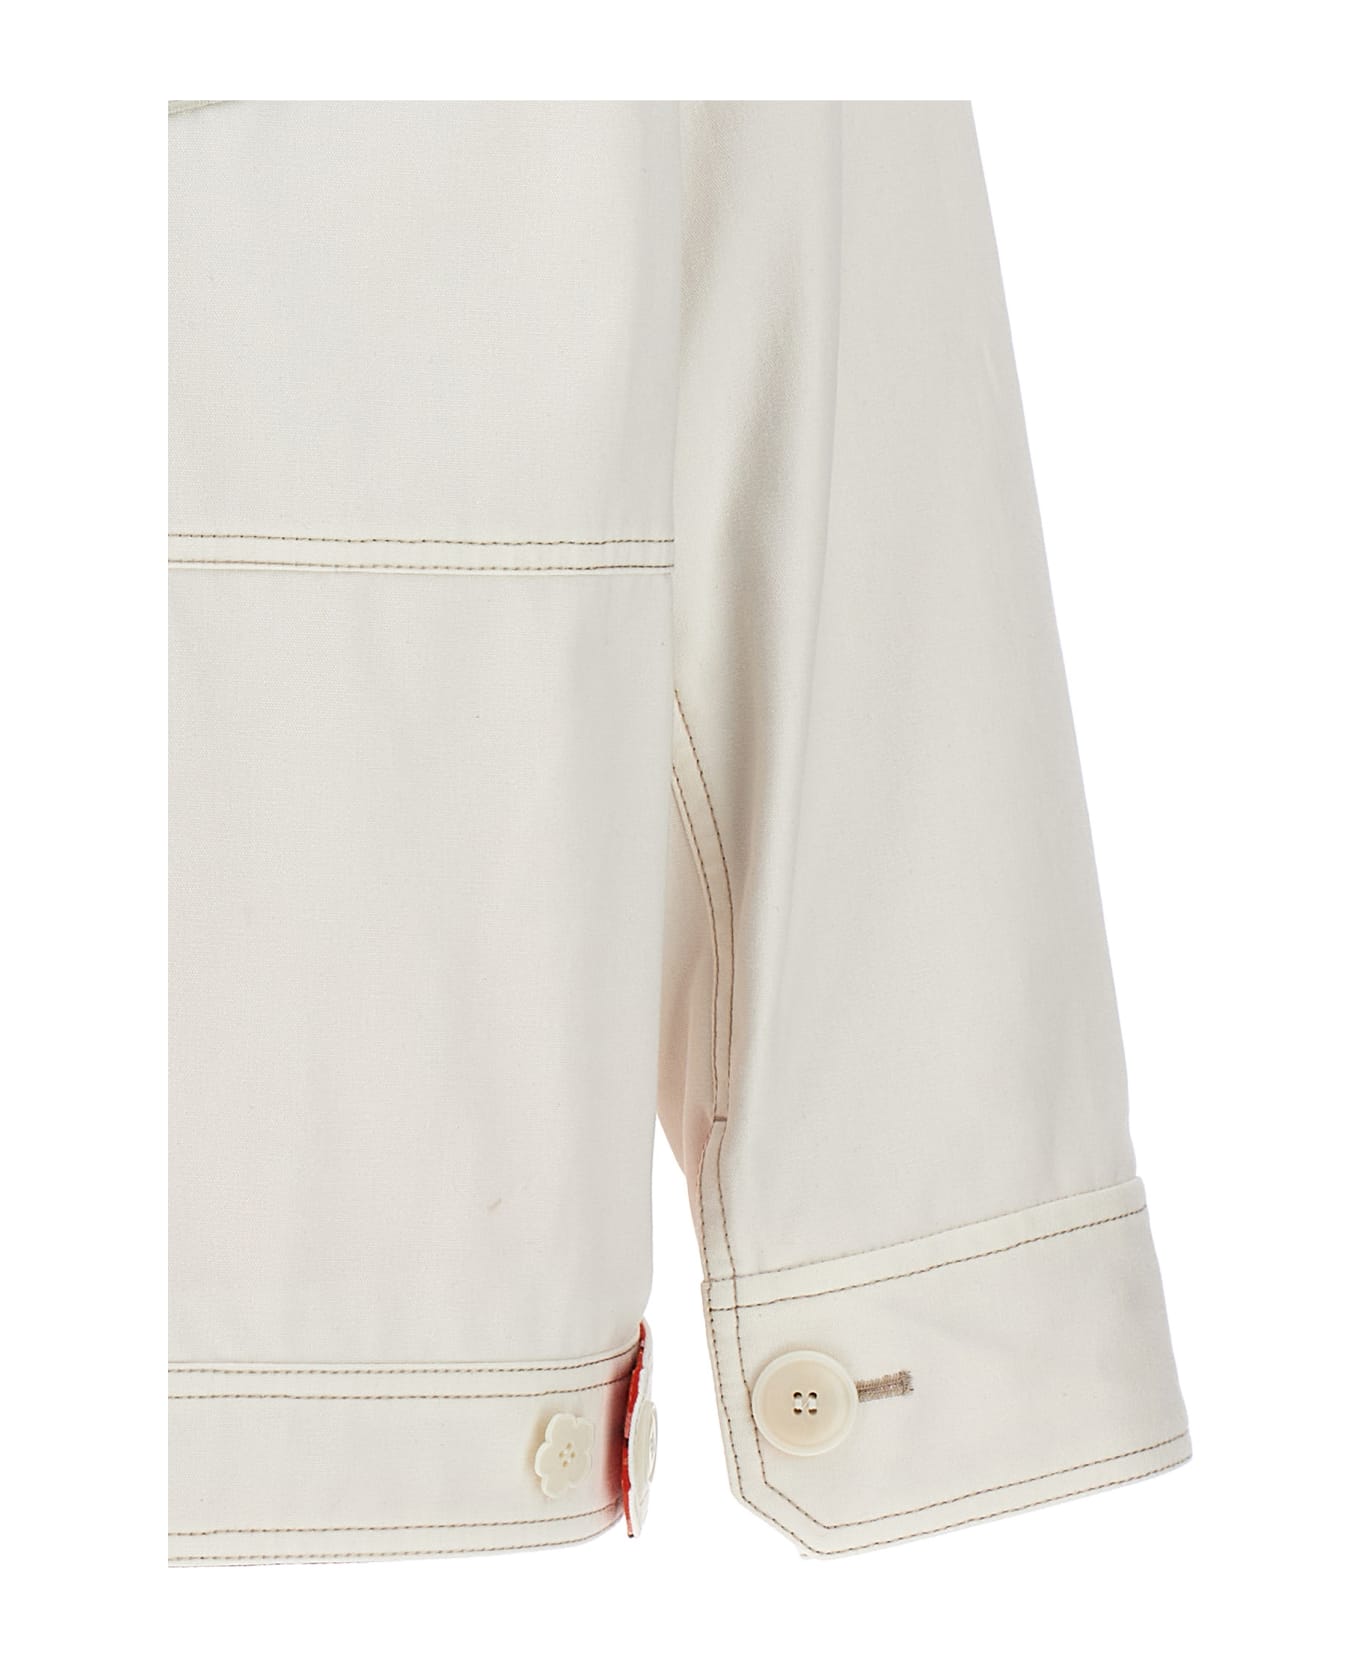 Kenzo 'workwear' Jacket - Blanc Casse ジャケット